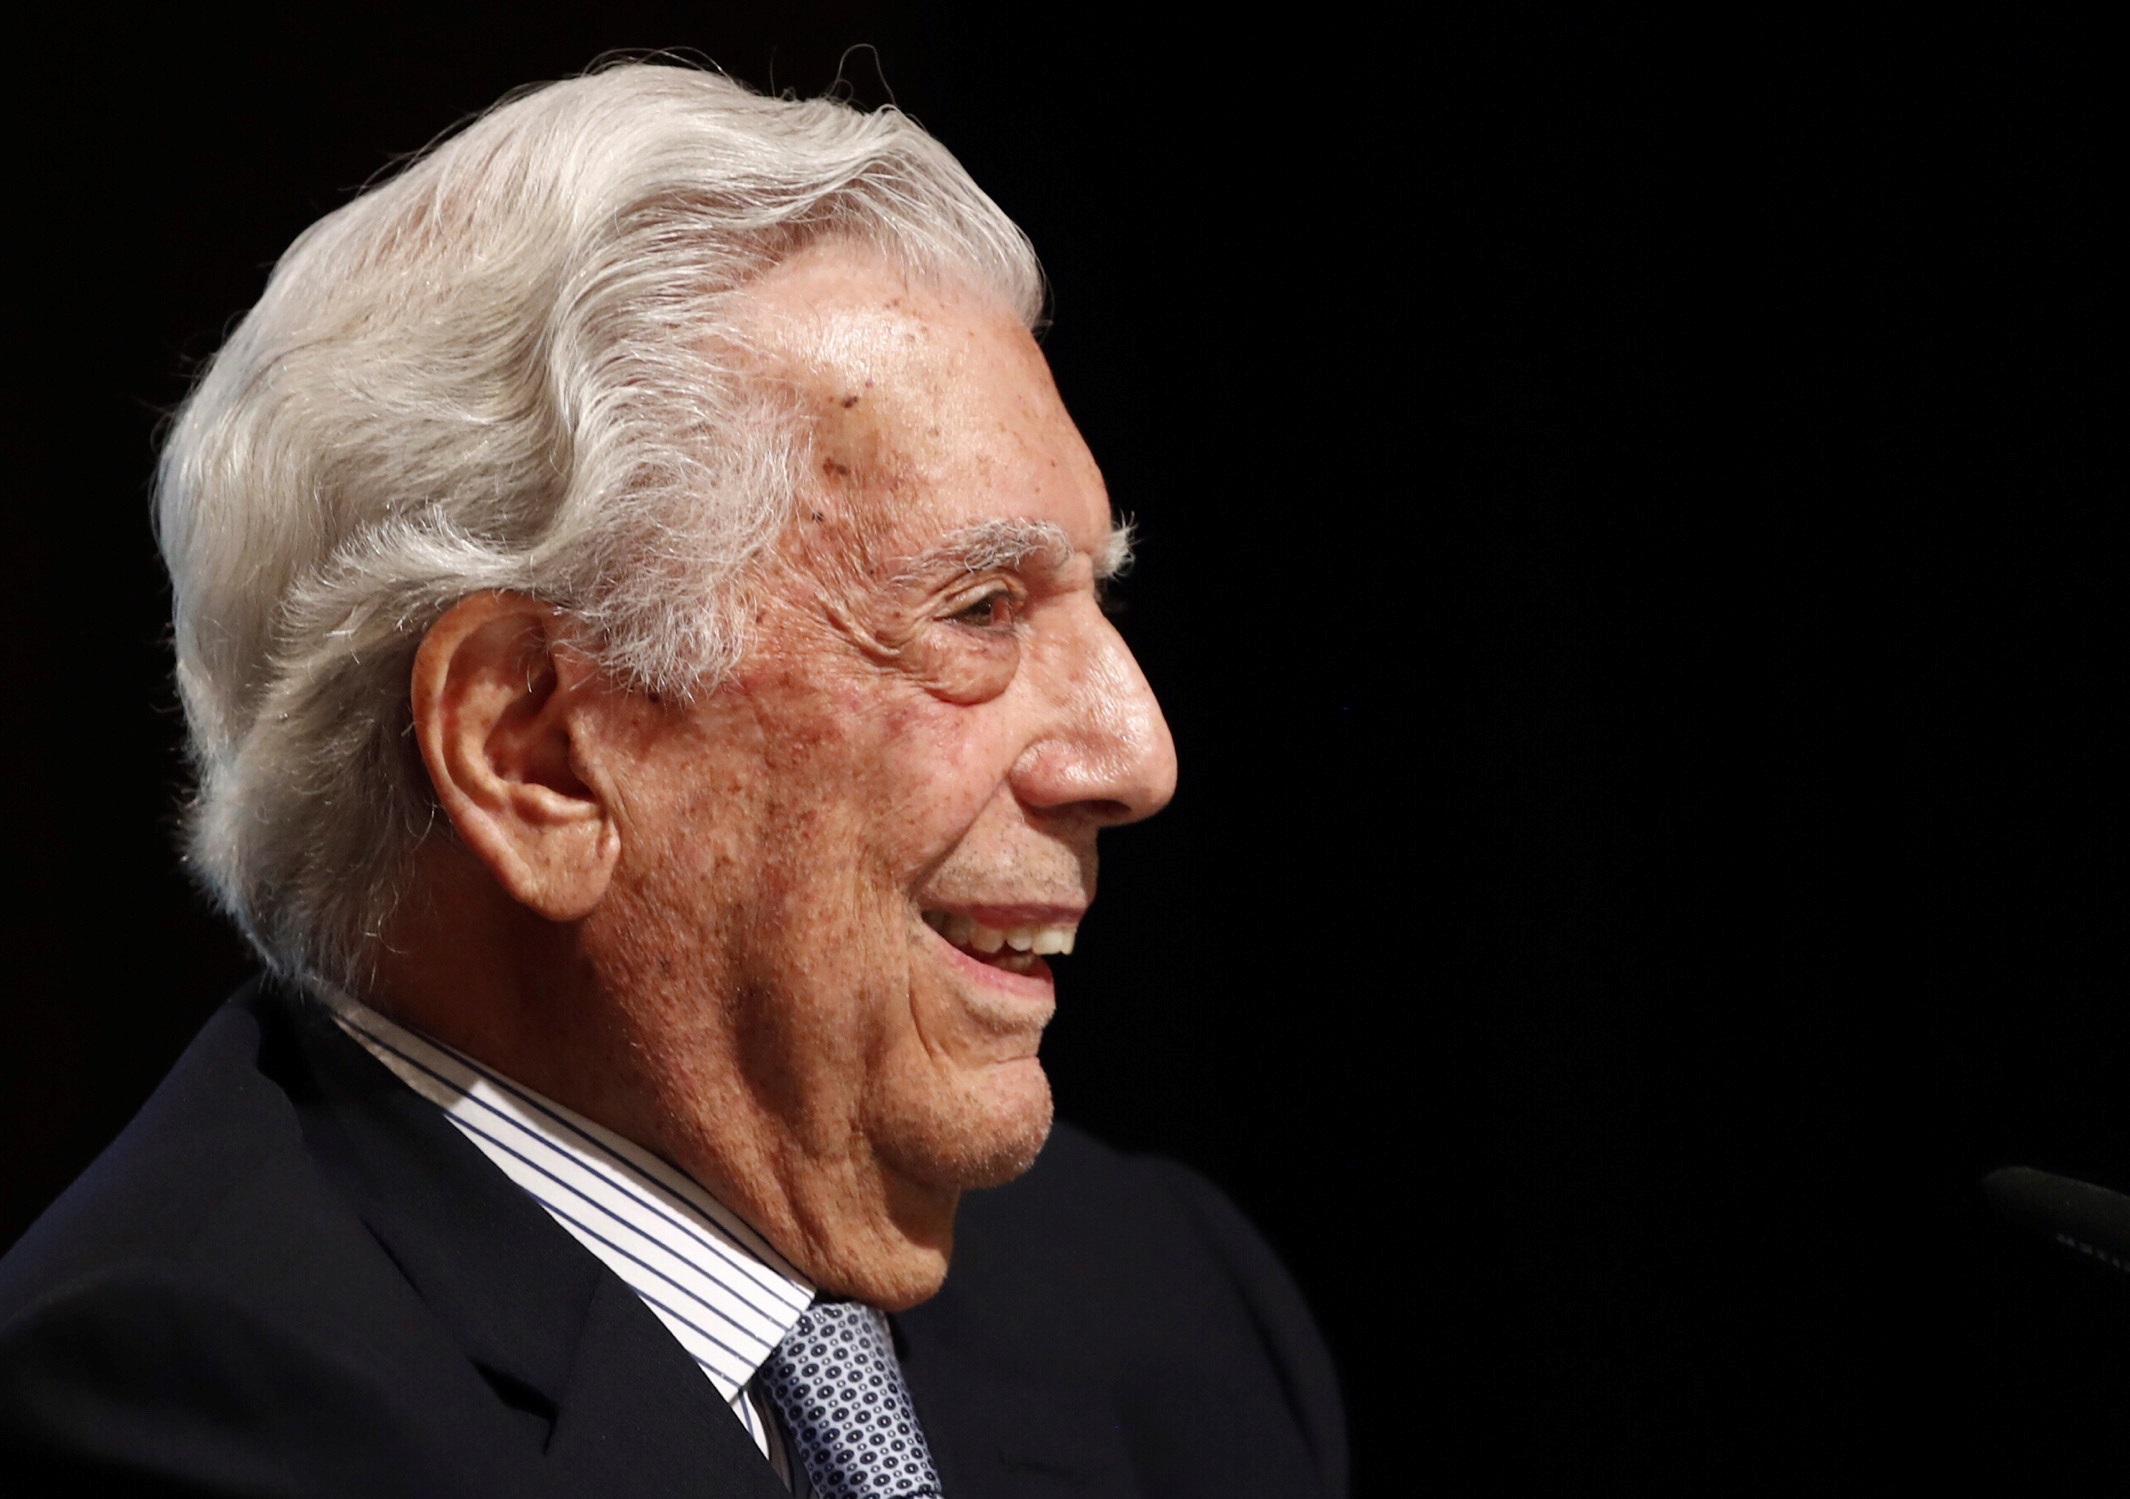 Mario Vargas Llosa, autor de obras enormes como "La fiesta del Chivo", "Conversación en La Catedral" y "La guerra del fin del mundo", cumple 85 años. (EFE/Javier López)
